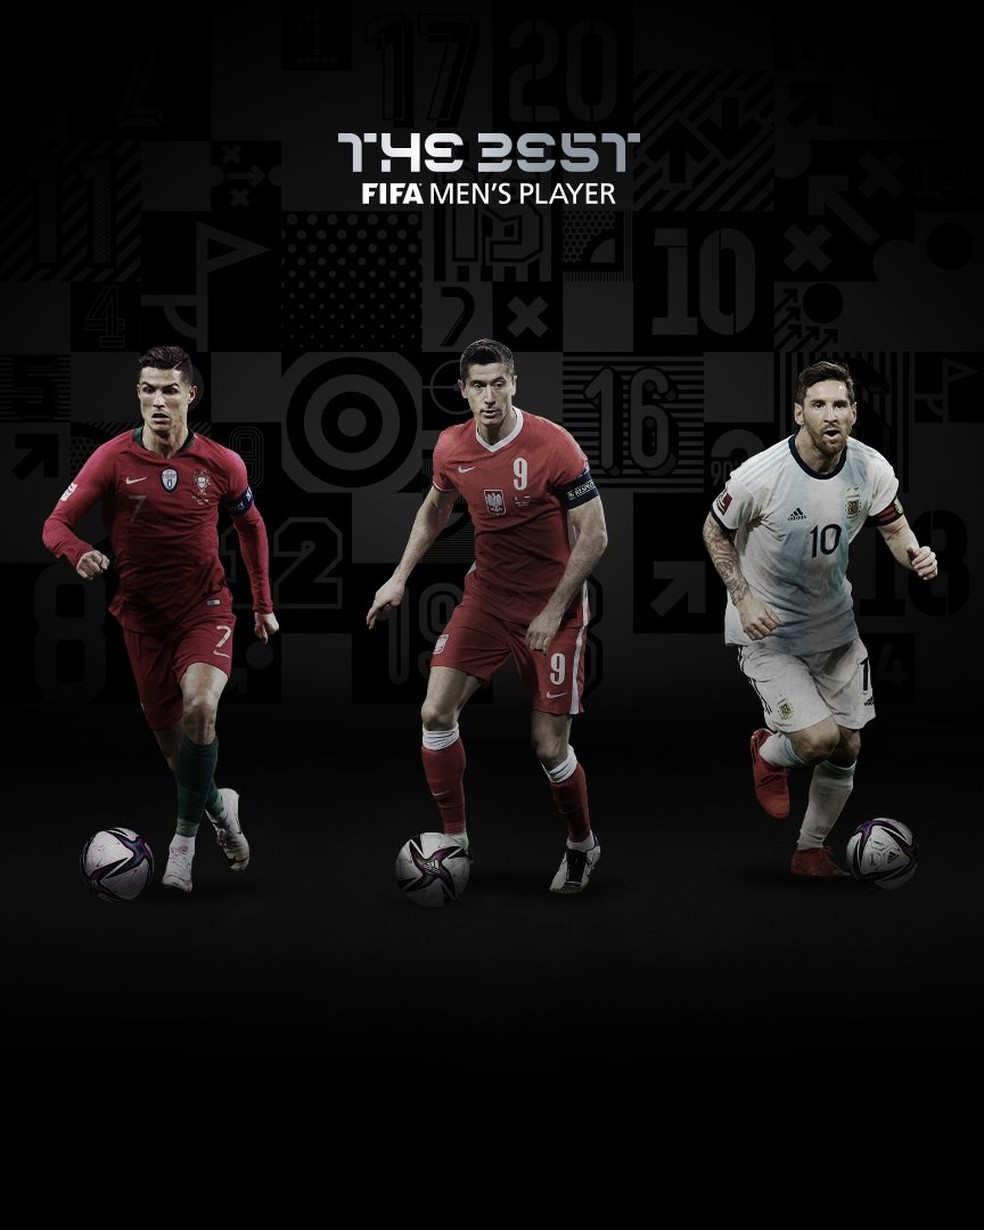 Melhor Jogador do Mundo: Fifa divulga os 3 finalistas - Rádio FM Itatiaia